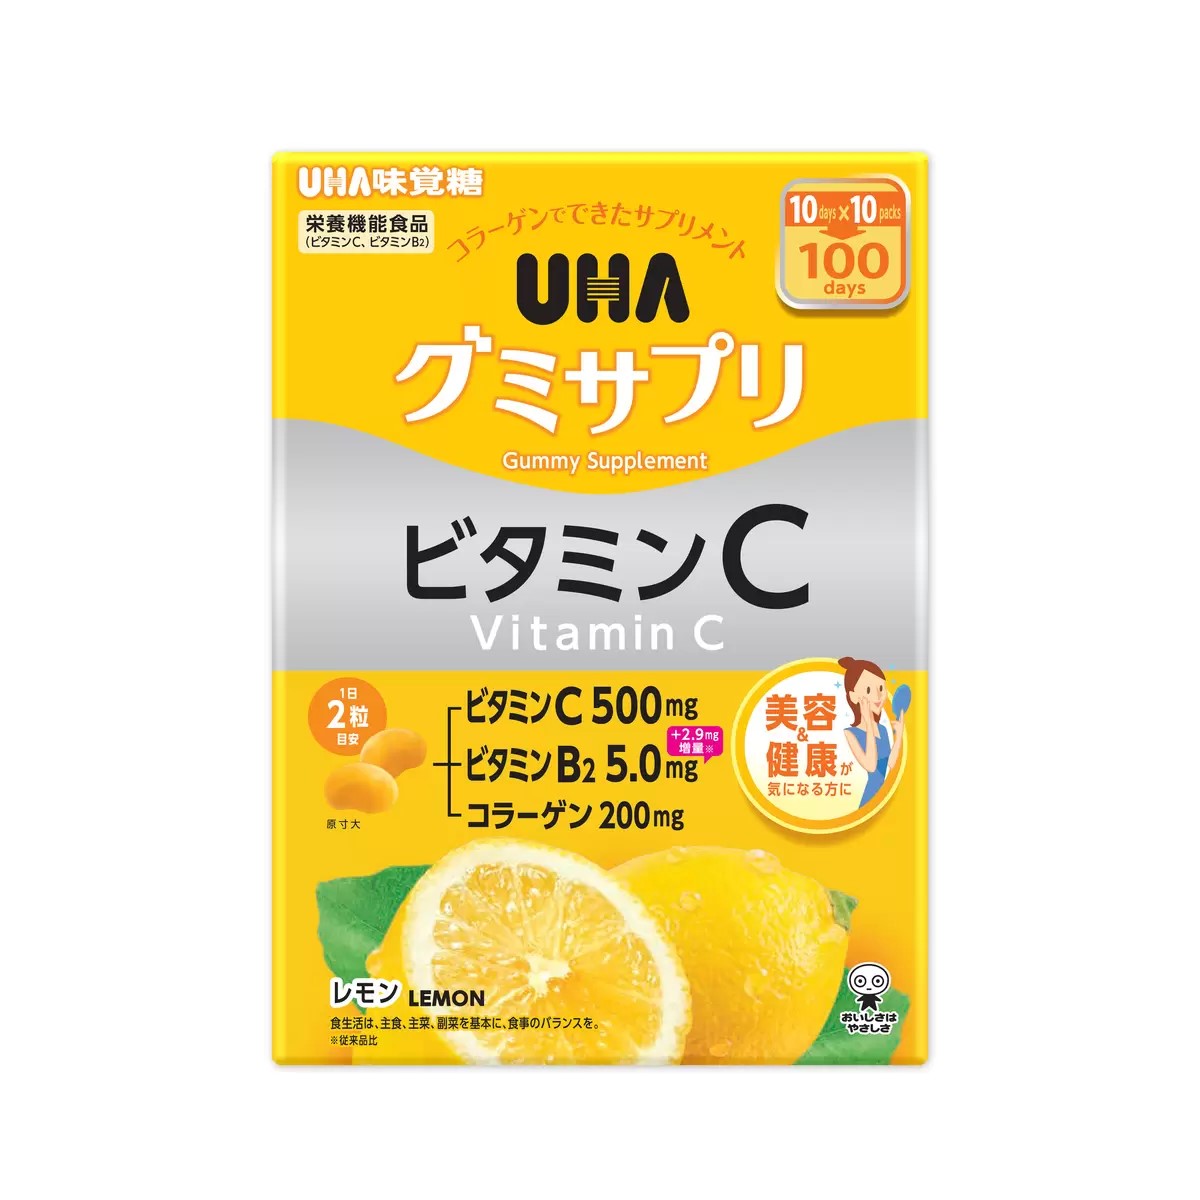 （UHA 味覚糖 グミサプリ ビタミンC レモン味 200粒）美容 健康が気になる方 ビタミン B2 コラーゲン 1日2粒 栄養機能食品 89999